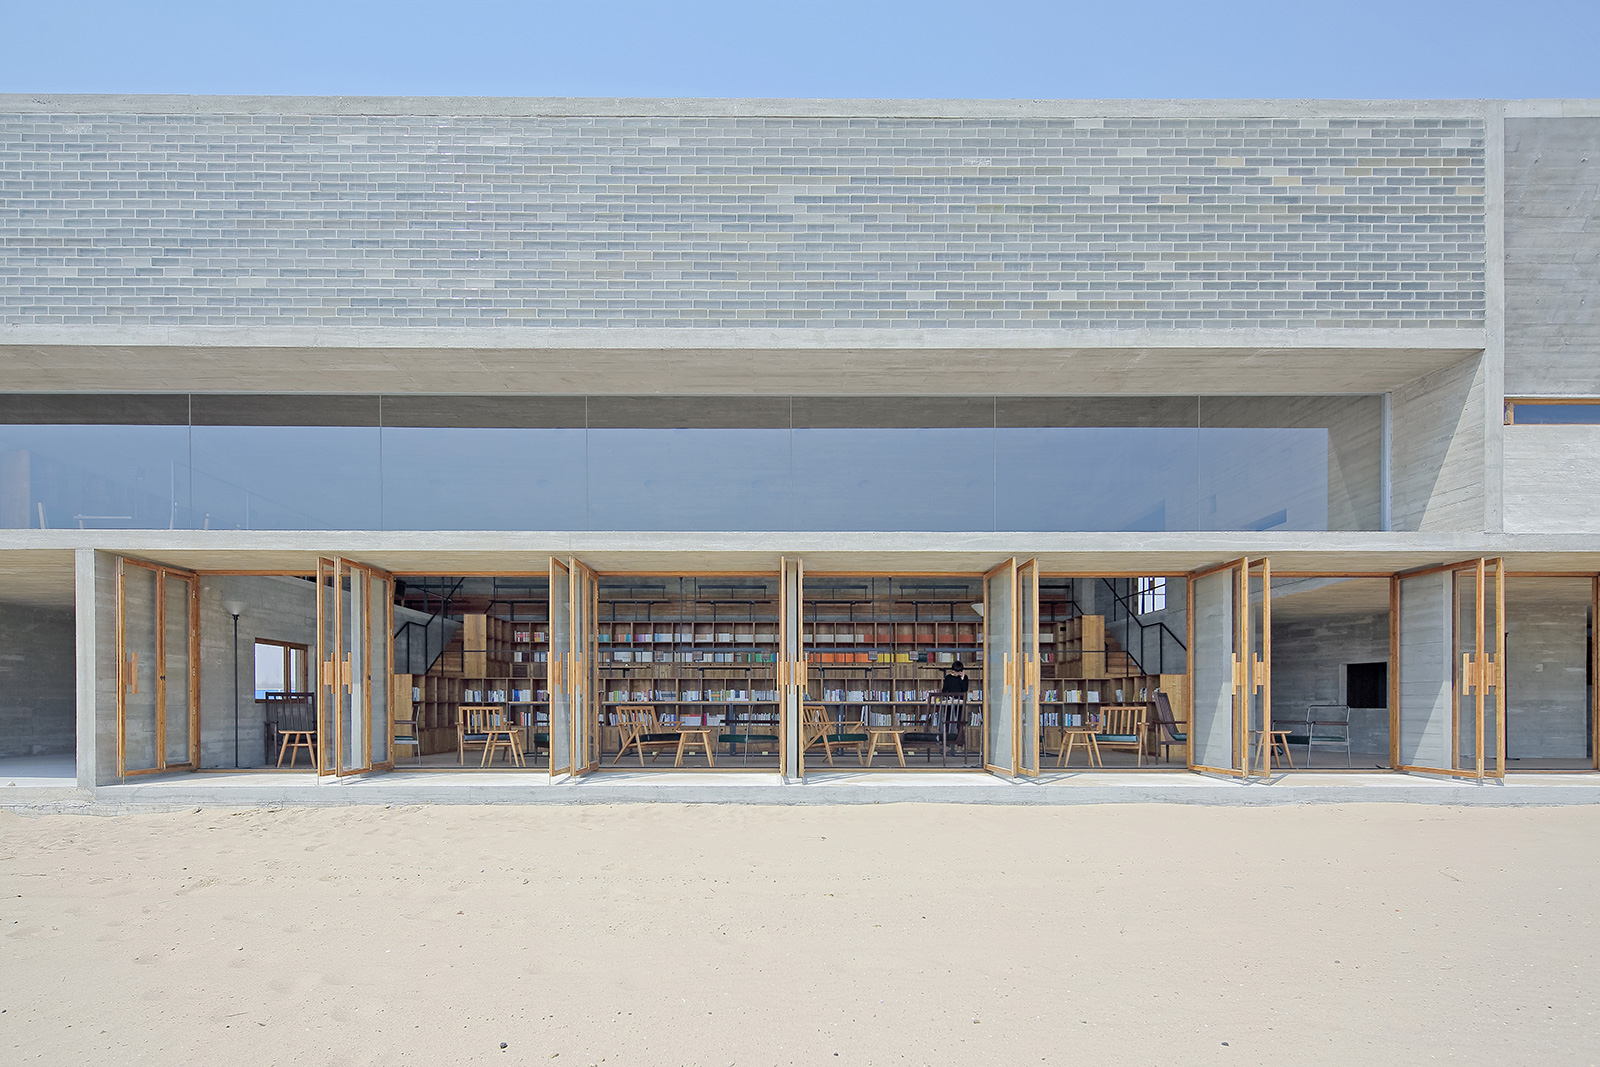 Knižnica na morskom pobreží 2